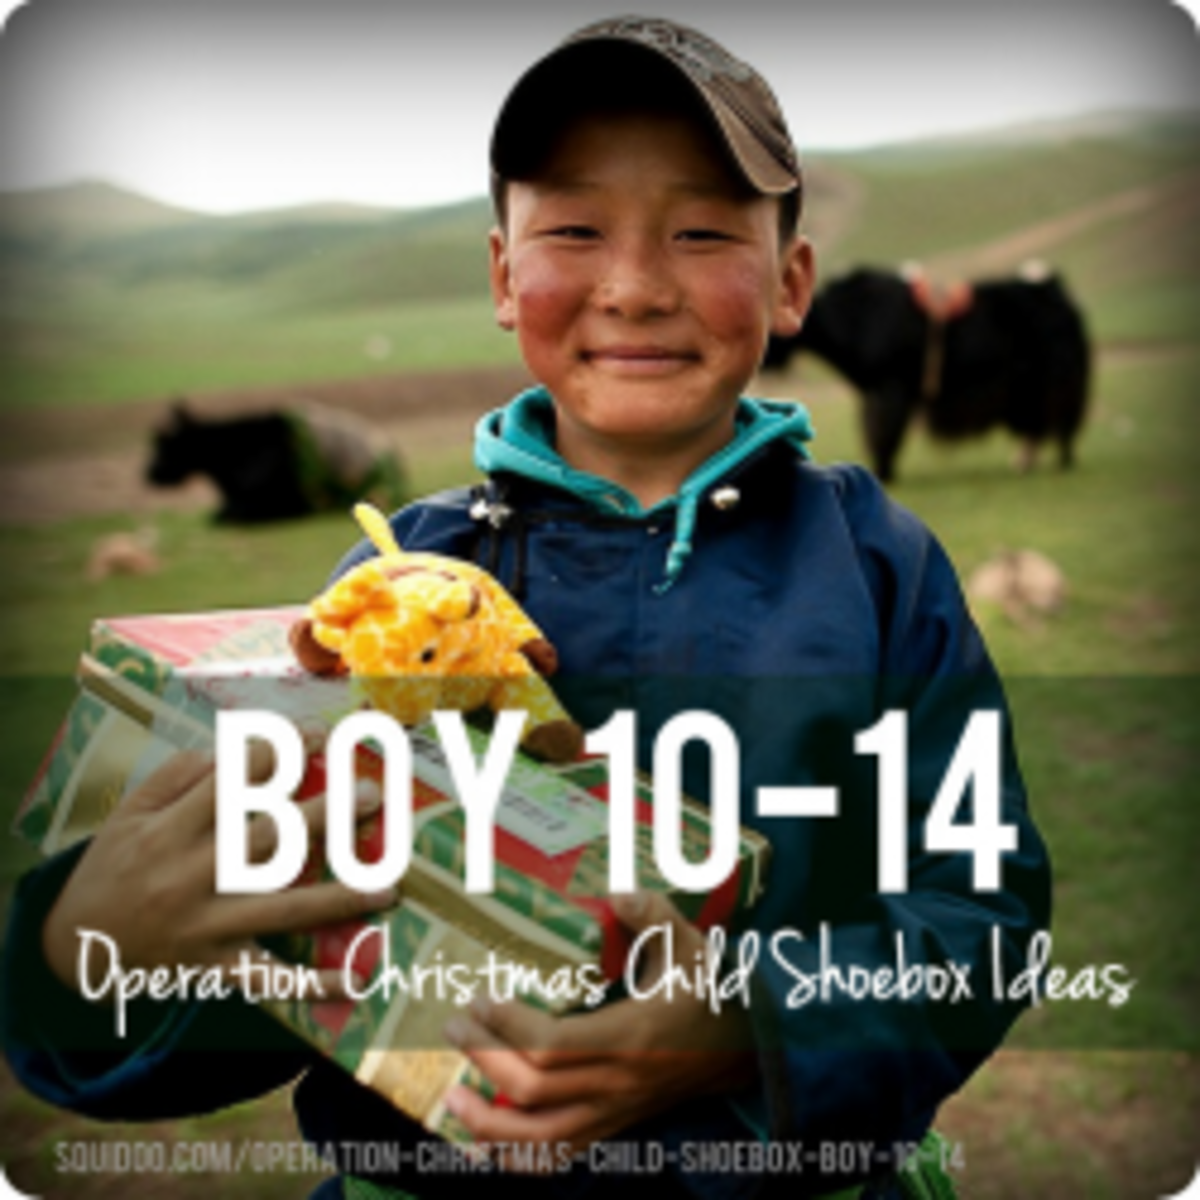 Operation Christmas Child Shoebox Ideas • Girl 10-14 | Holidappy